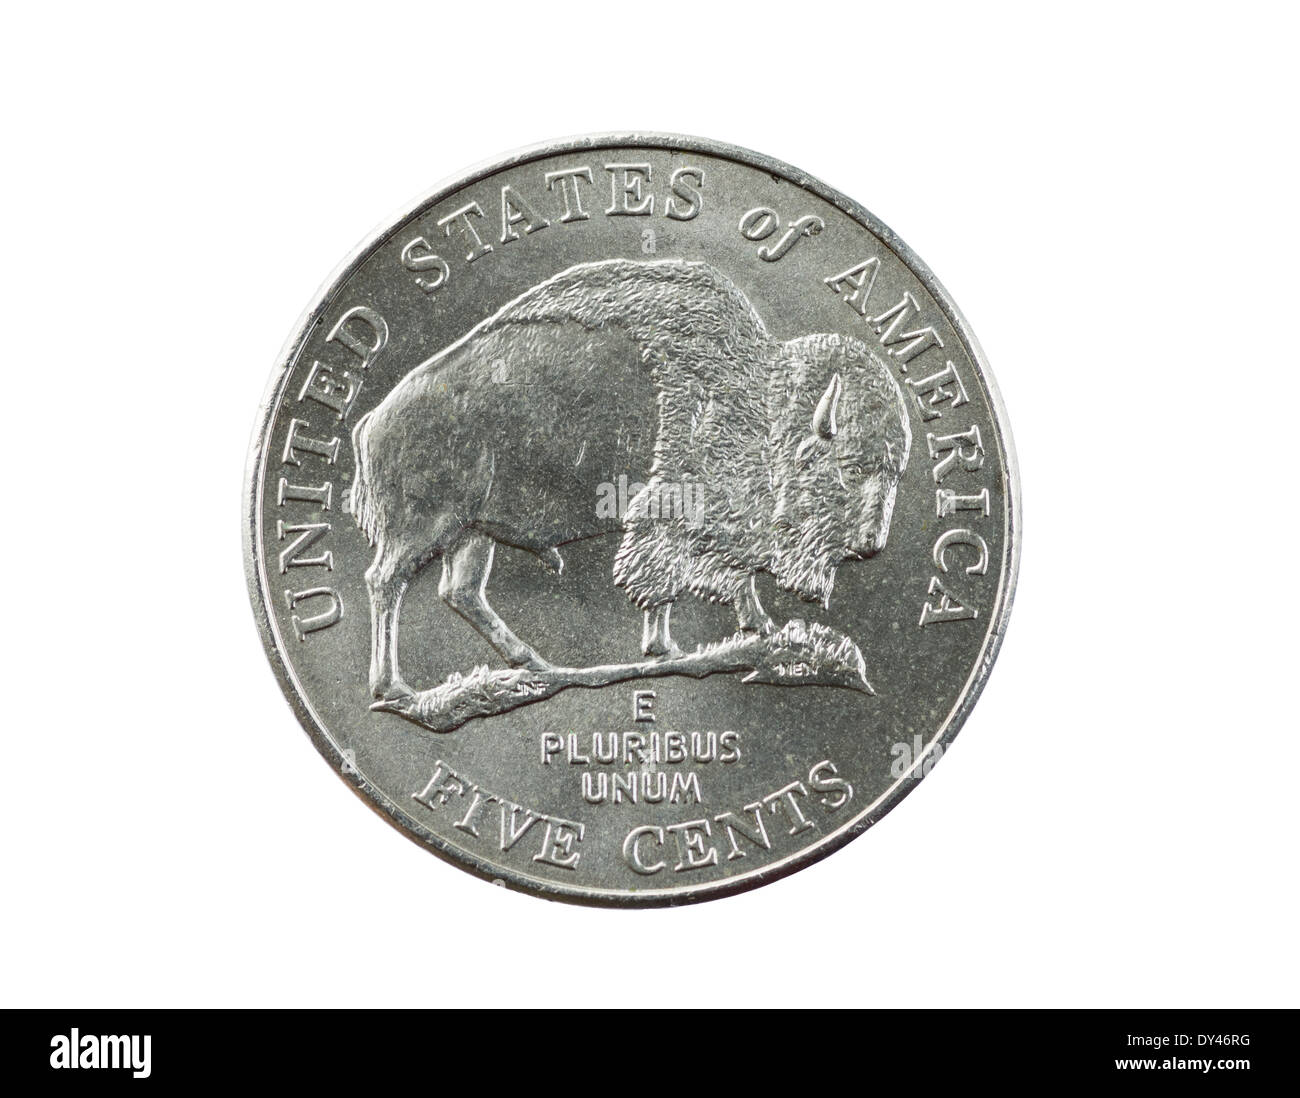 Büffel oder Bison nickel Münze isoliert auf weiss Stockfoto